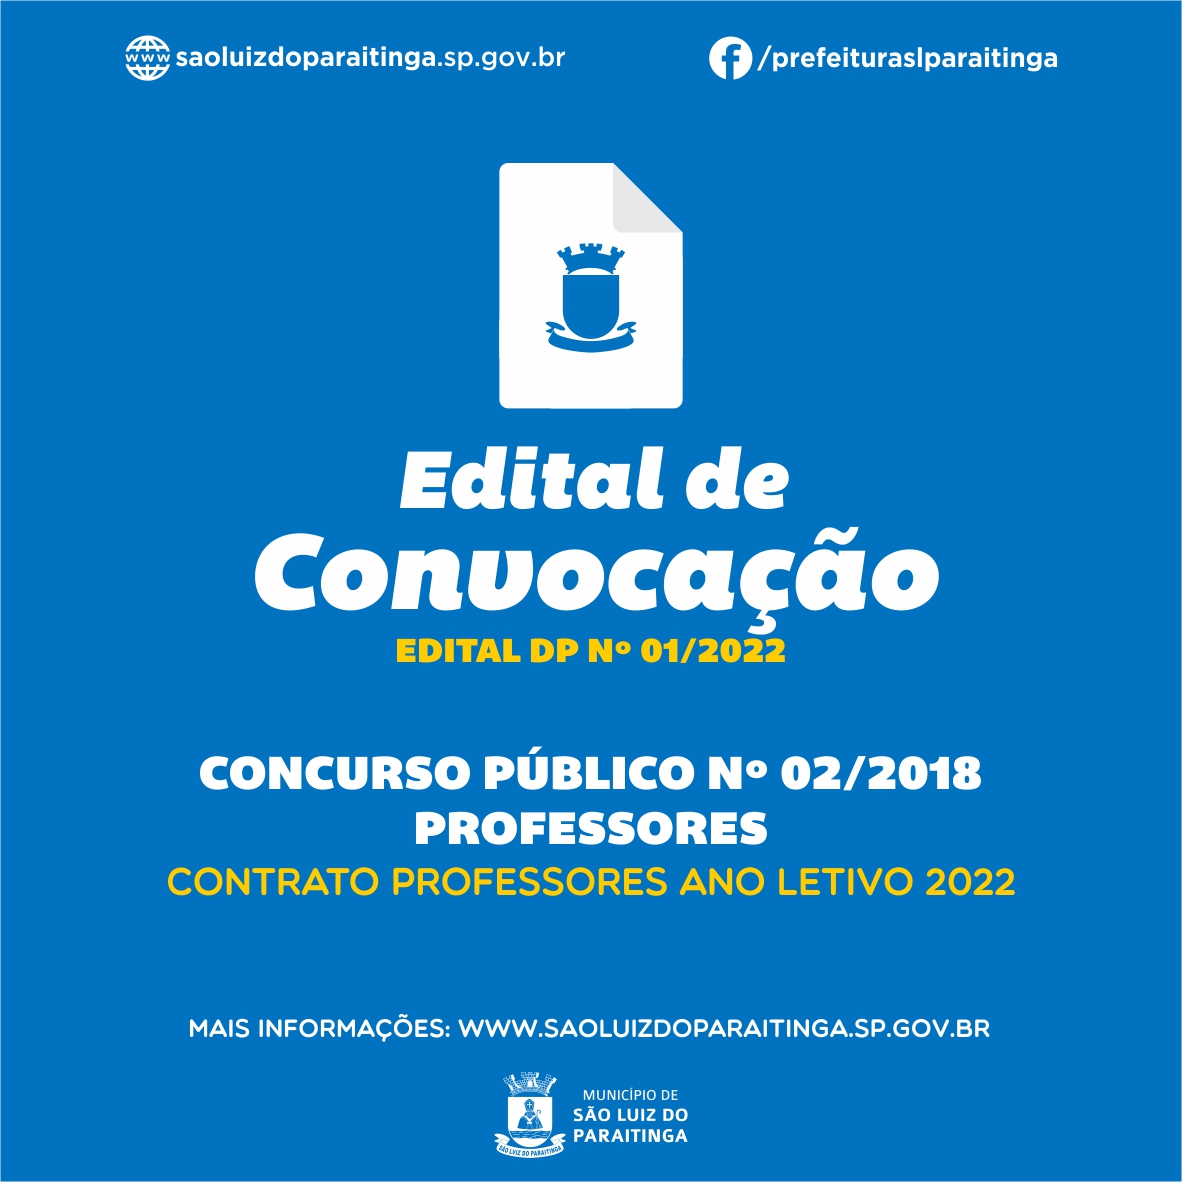 EDITAL DE CONVOCAÇÃO Nº 001/2023 – MANIFESTAÇÃO DE INTERESSE NA